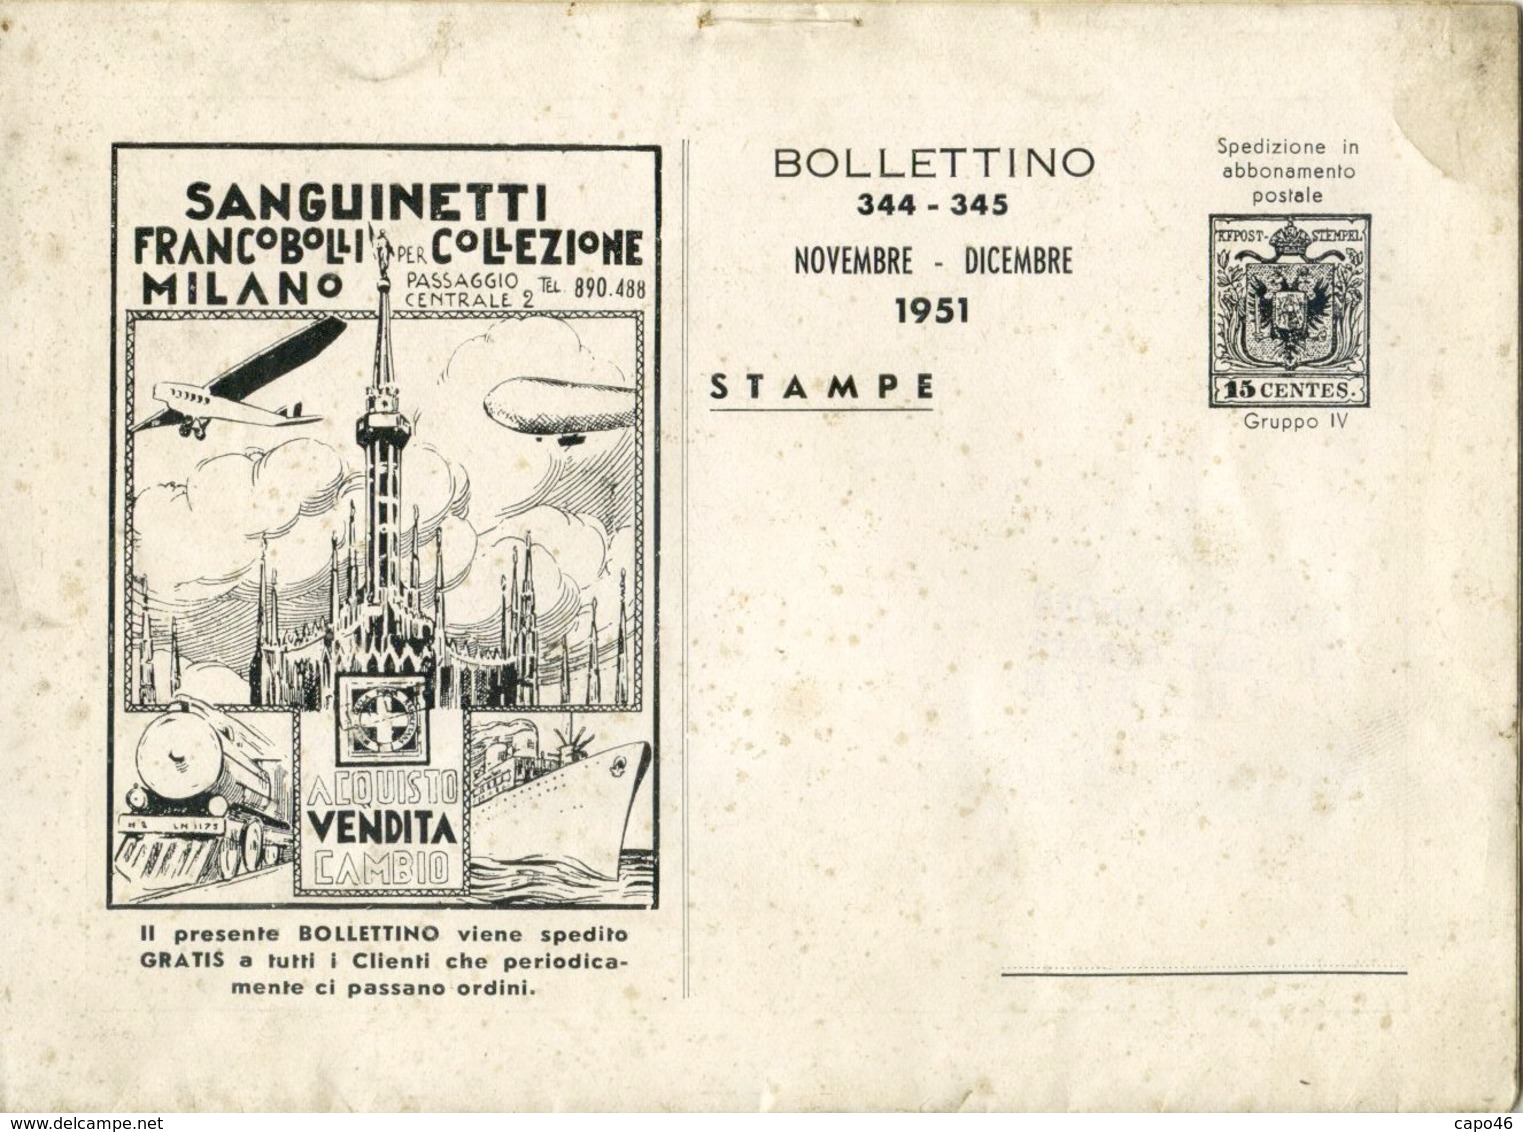 CF 14 - BOLLETTINO MENSILE NOVEMBRE DICEMBRE 1951 A. R. SANGUINETTI - 8 PAGINE + COP - Italy